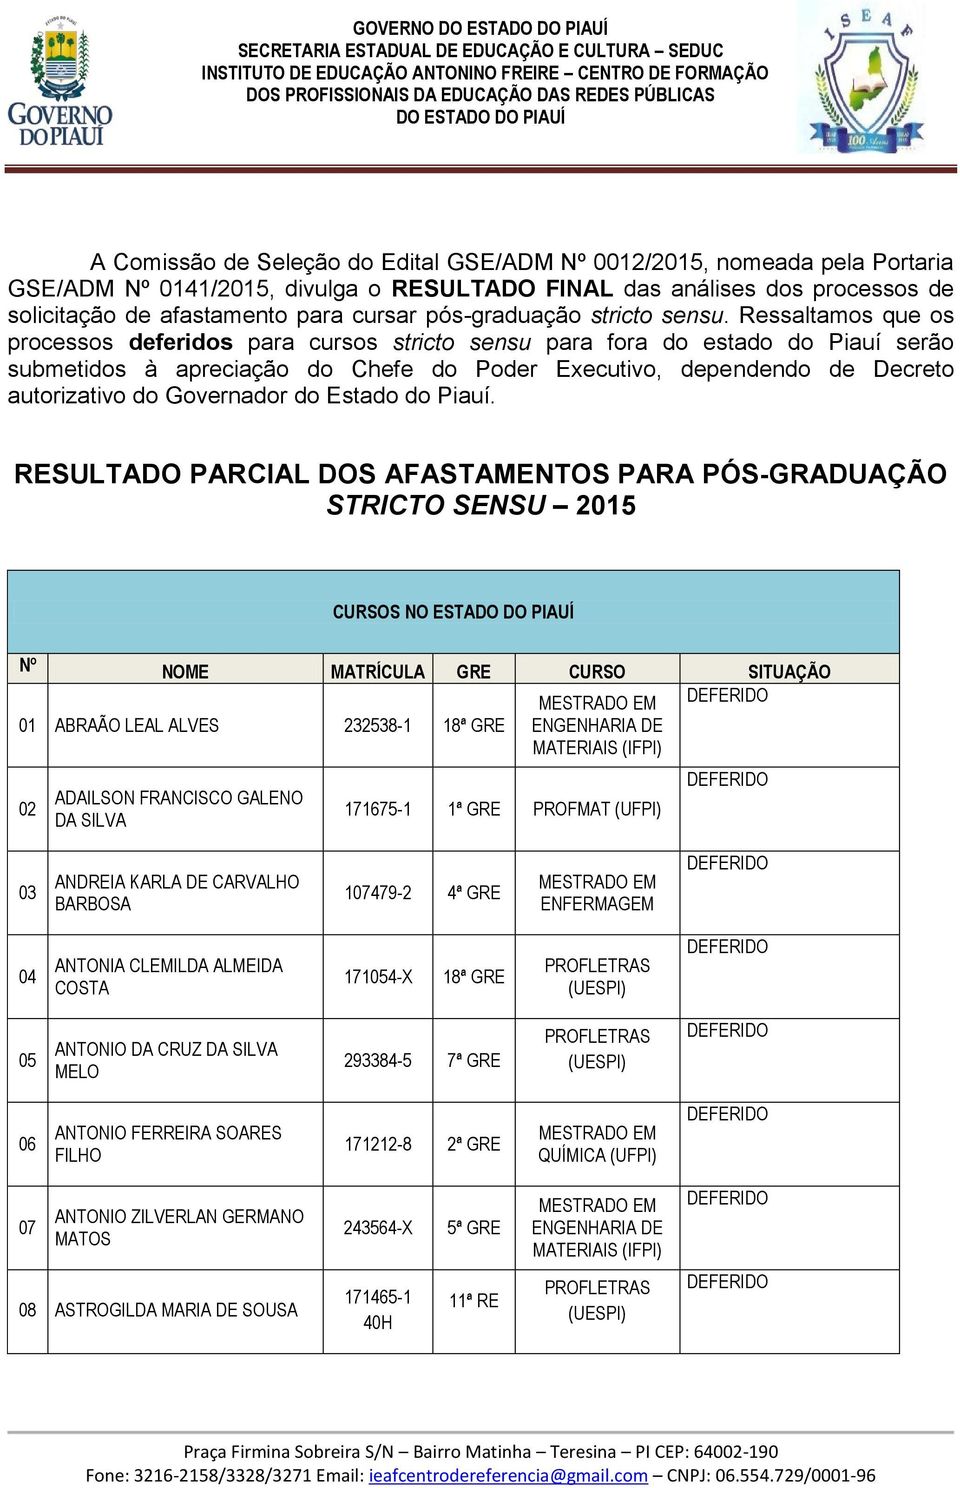 Ressaltamos que os processos deferidos para cursos stricto sensu para fora do estado do Piauí serão submetidos à apreciação do Chefe do Poder Executivo, dependendo de Decreto autorizativo do